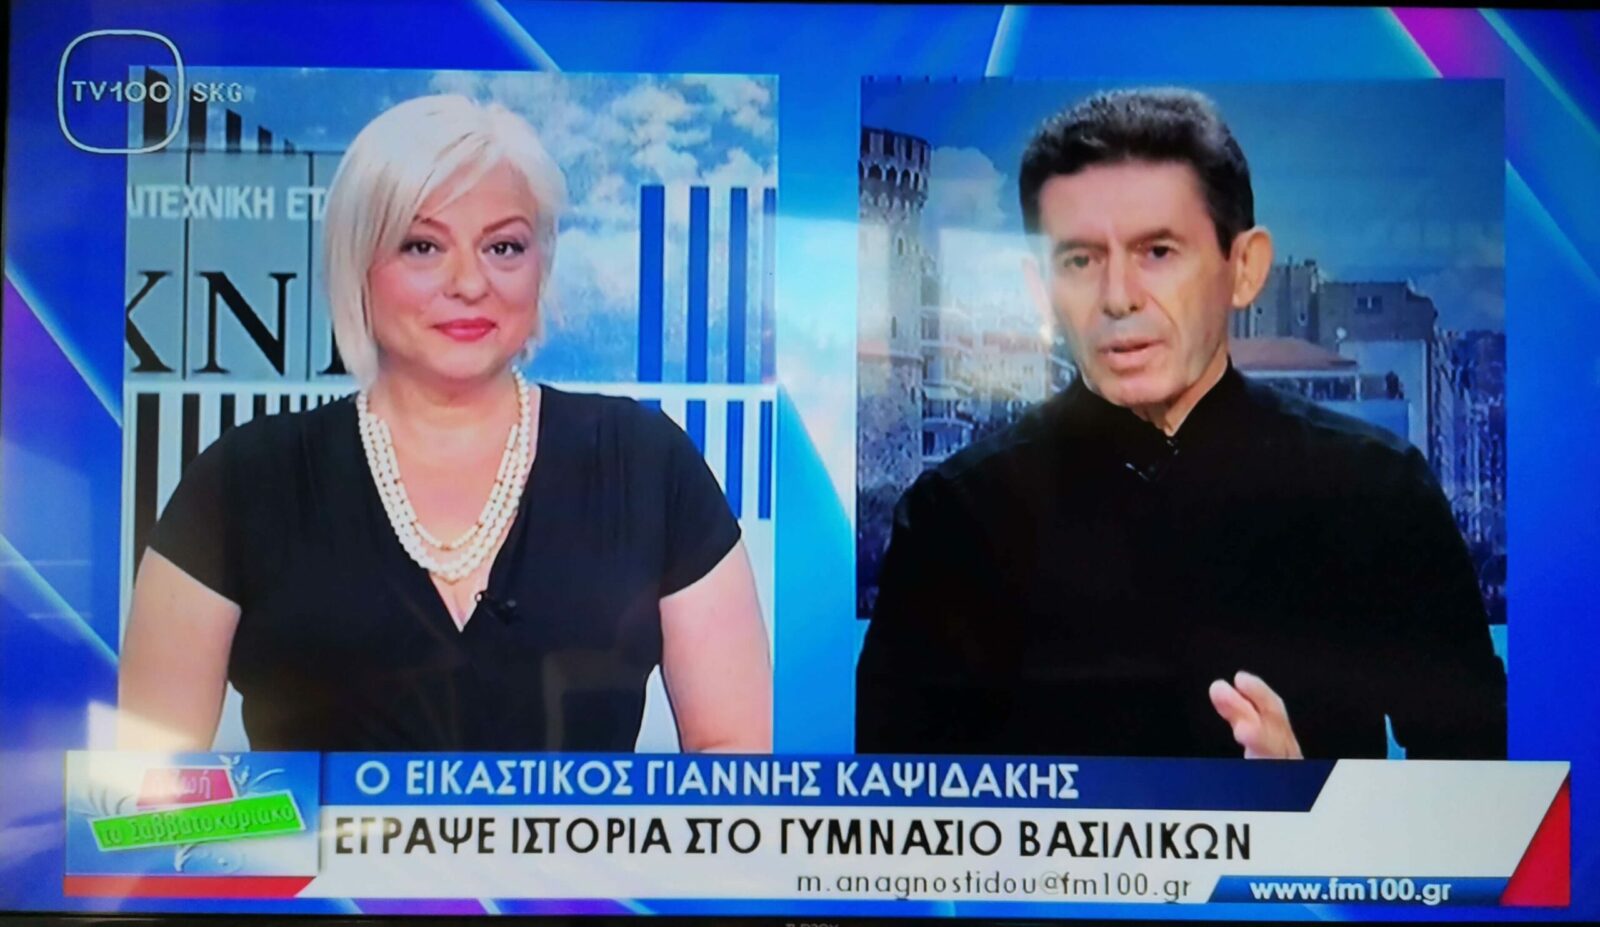 Ο Γ. Καψιδάκης σε συνέντευξη στο tv100 (video)